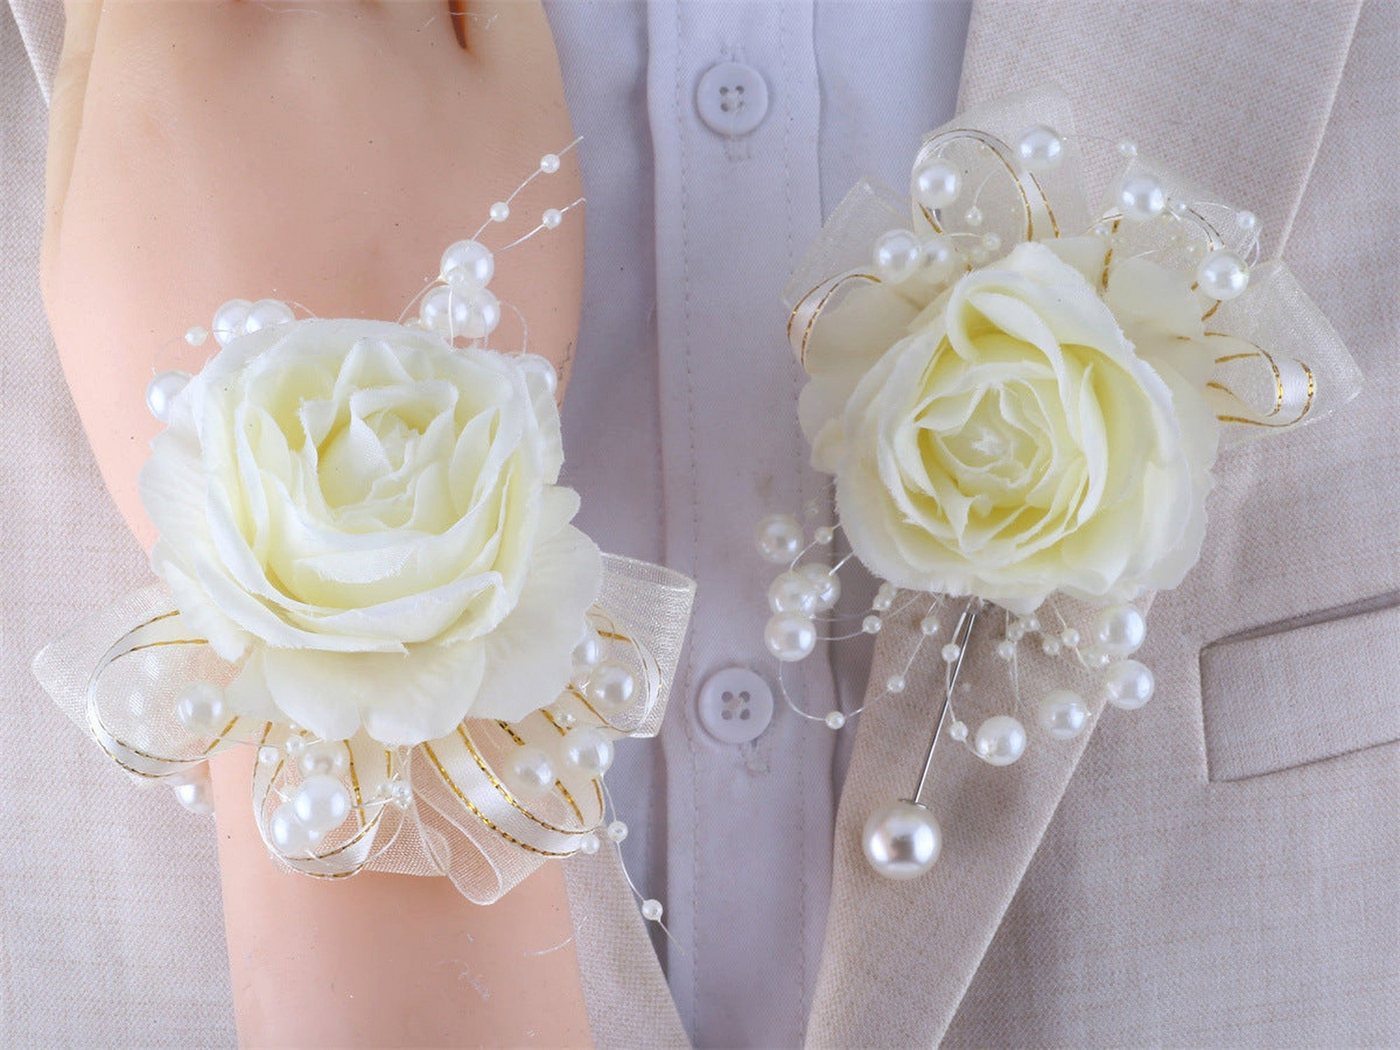 YRIIOMO Ansteckblüte 1 Satz Hochzeits-Bräutigam-Corsage-Braut-Handgelenk-Blumen-Reis-weiße, Blumen-Hochzeits-Corsage von YRIIOMO